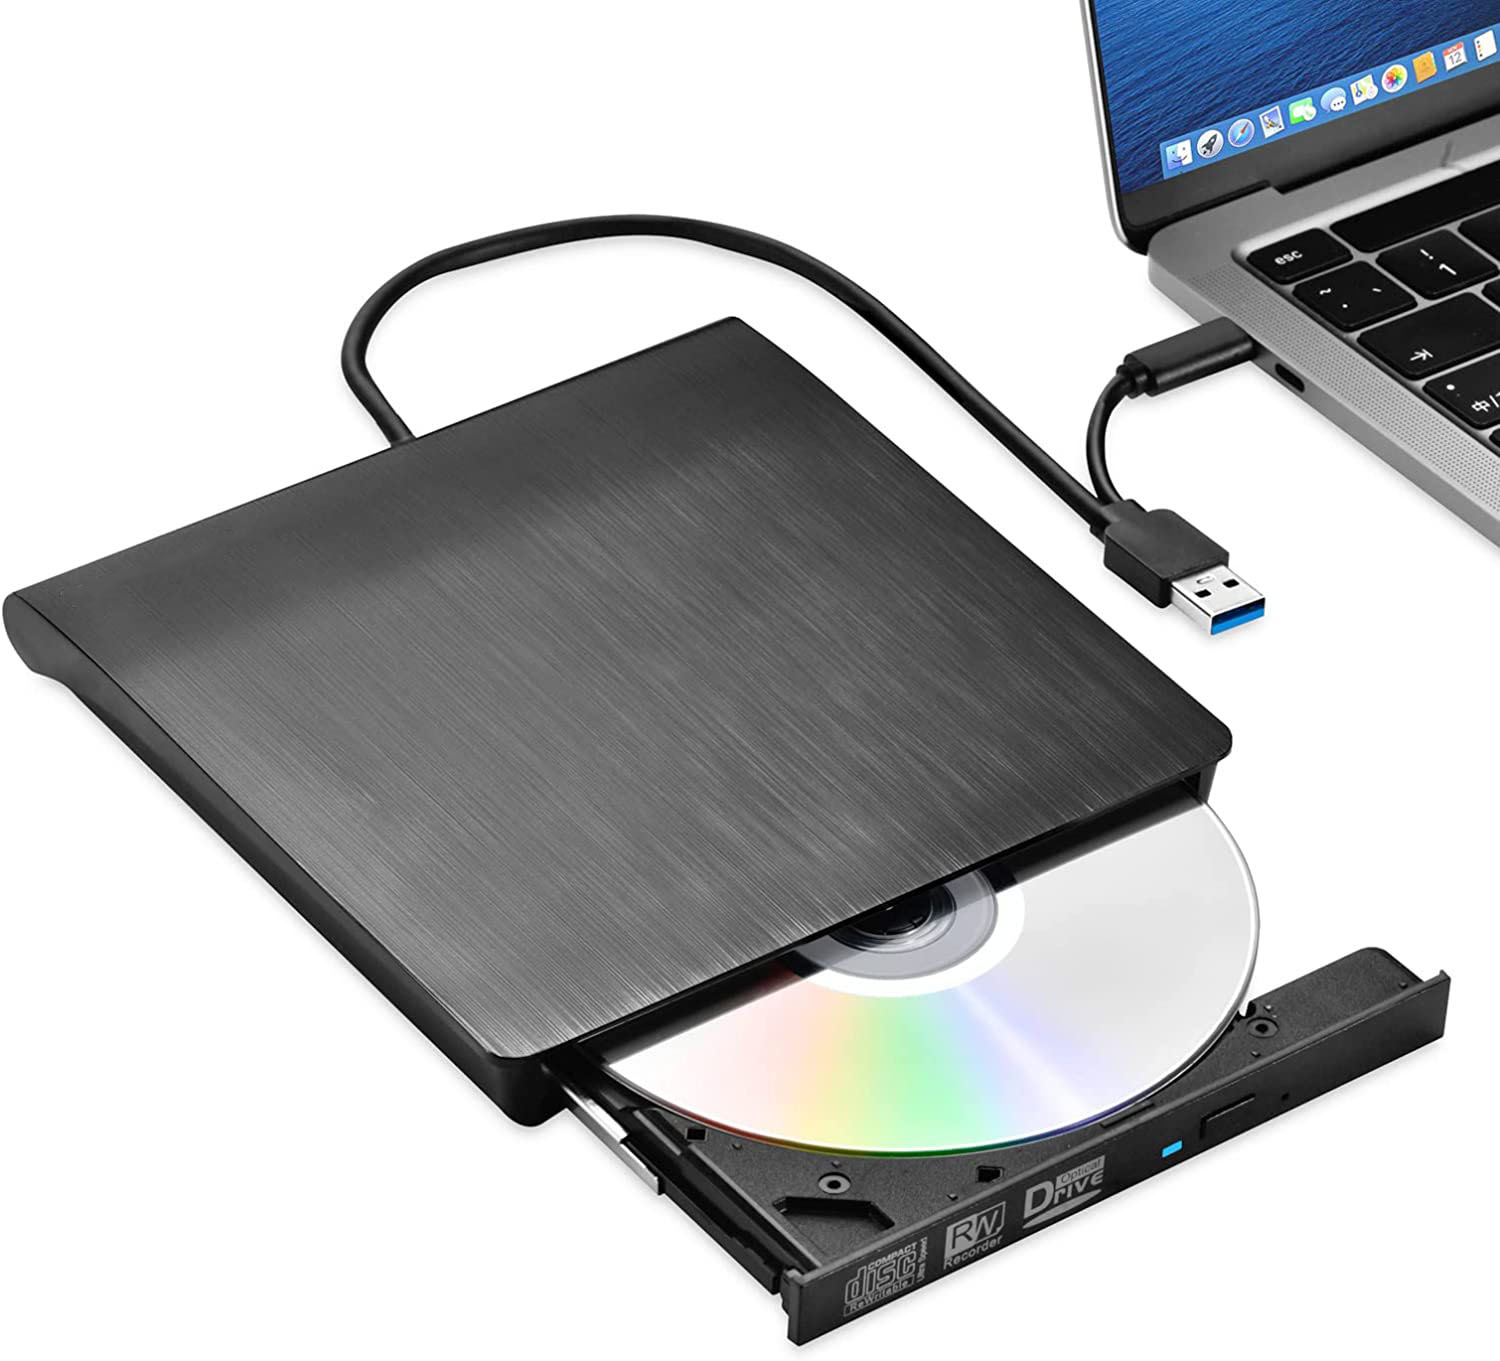 Ổ đĩa quang CD/DVD-RW cắm ngoài USB 3.0, Type-C cho Macbook, Laptop hỗ trợ đọc ghi đĩa dvd, cd tốc độ cao - DVD-RW Đọc & Ghi